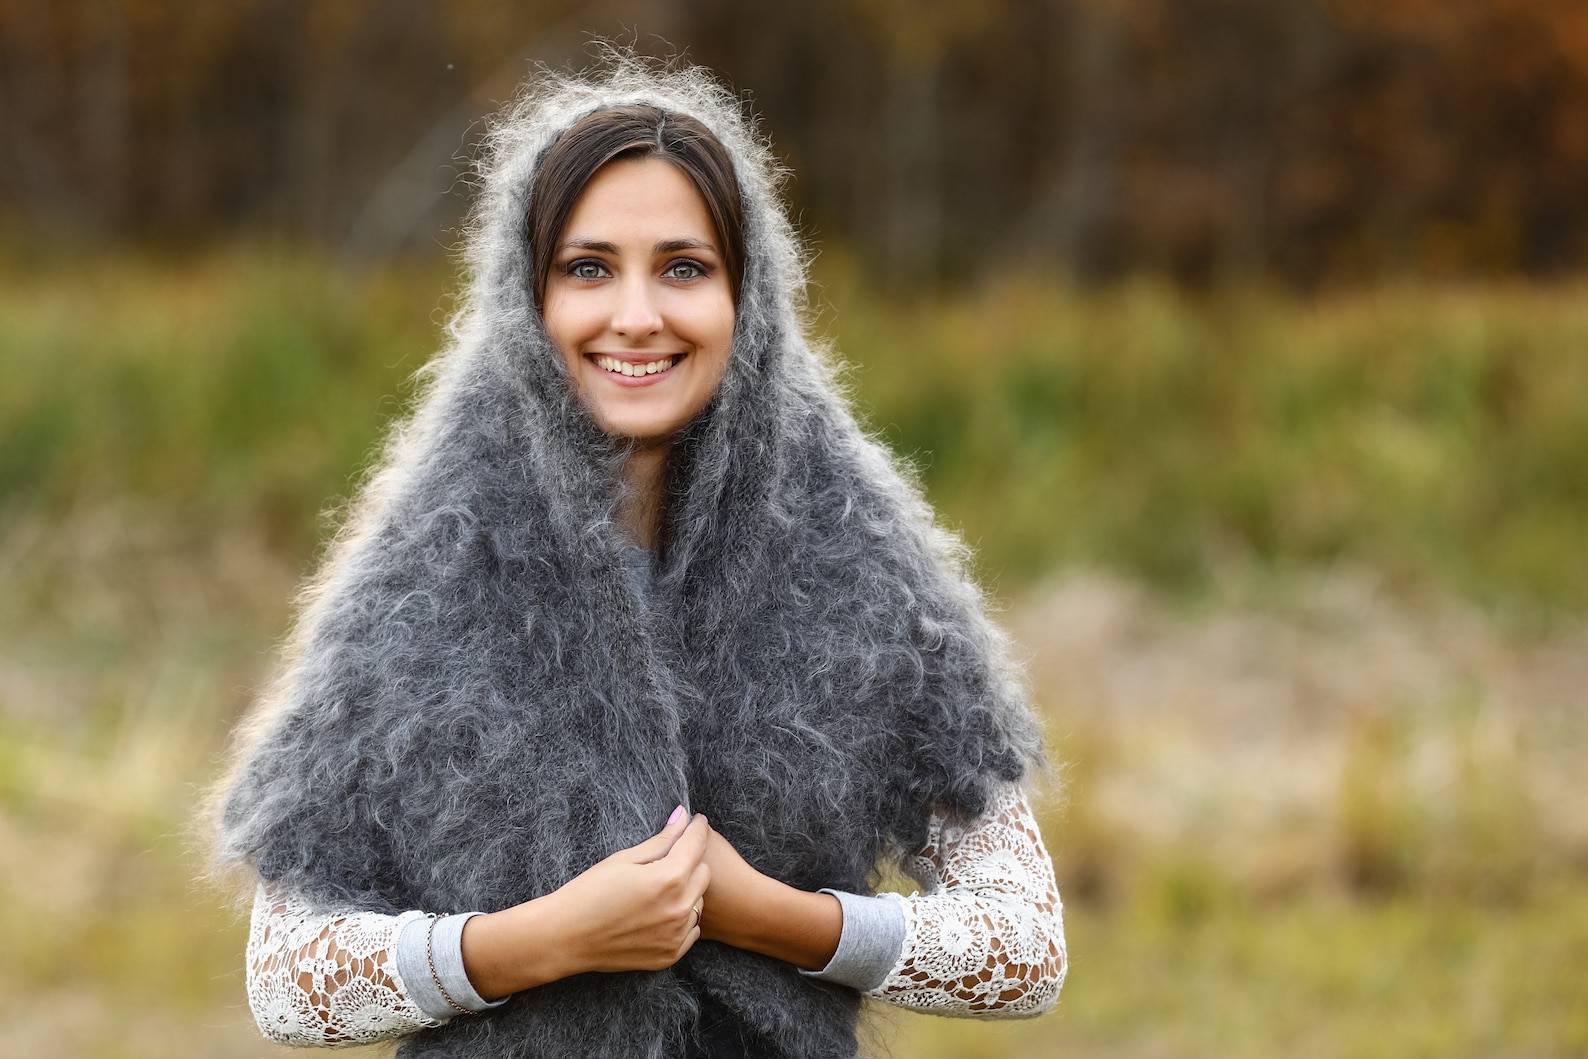 Оренбургский пуховый платок: народный промысел